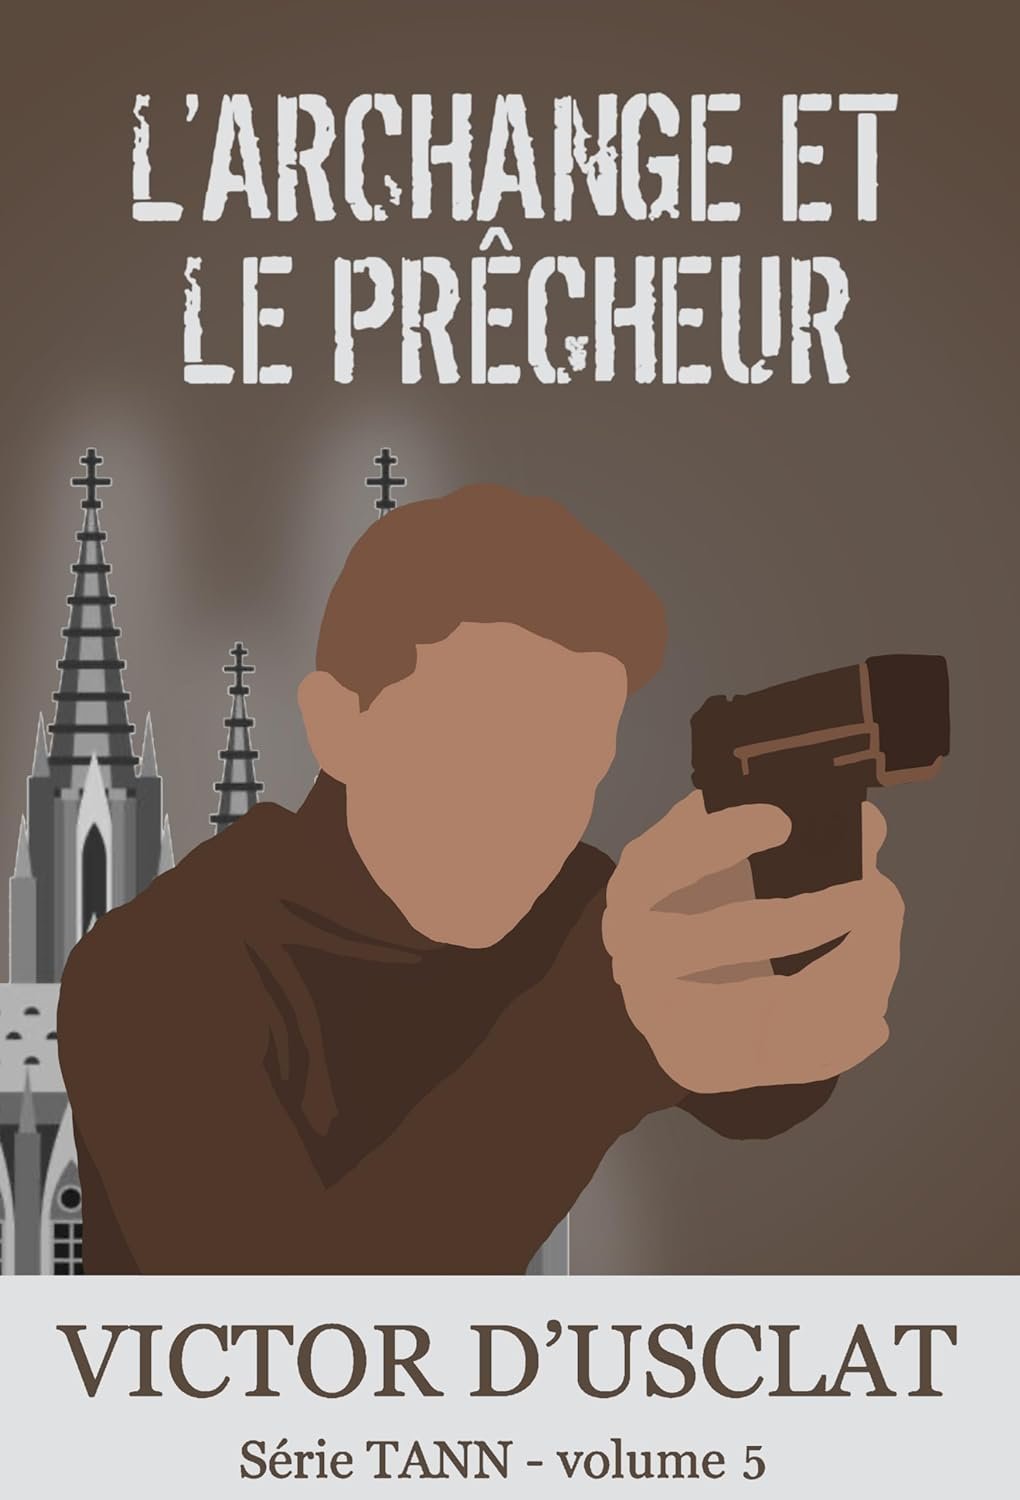 Victor d'Usclat  - L'Archange et le Prêcheur: Tann - volume 5